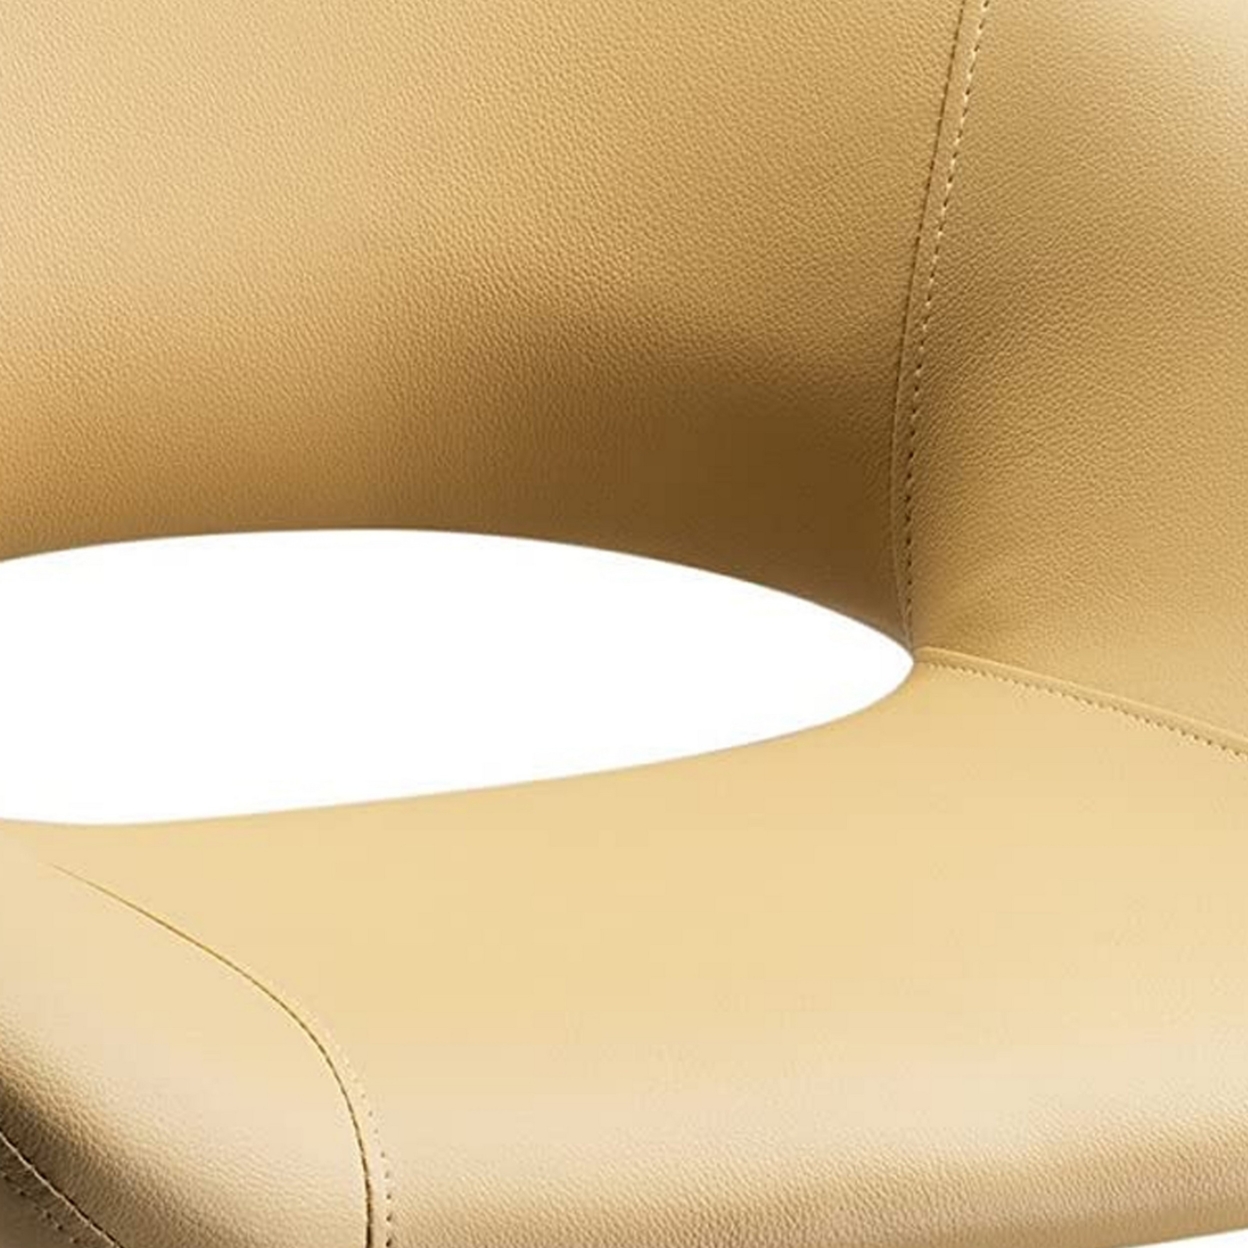 Dela 25 Inch Modern Office Chair, Vegan Faux Leather, Rolling Wheels, Beige, Saltoro Sherpi